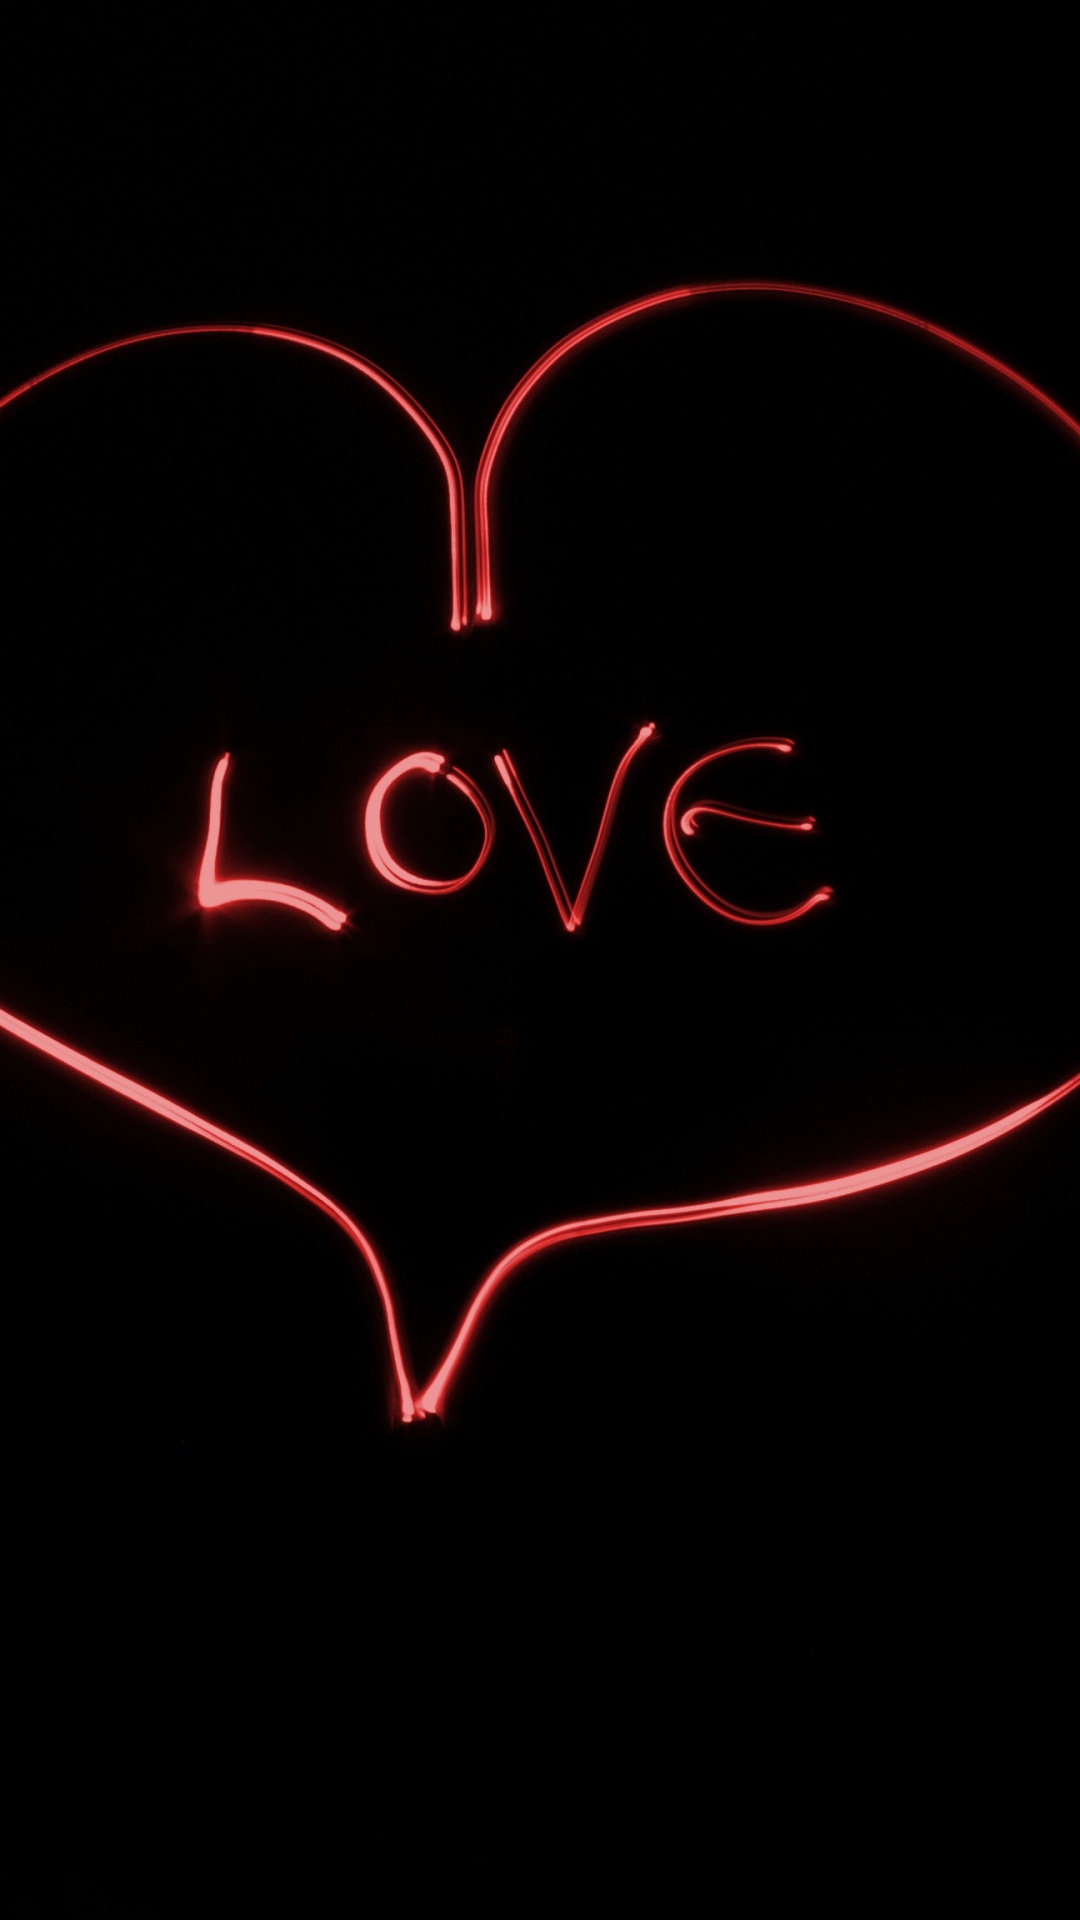 爱情, 心脏, 文本, 红色的, 器官 壁纸 1080x1920 允许